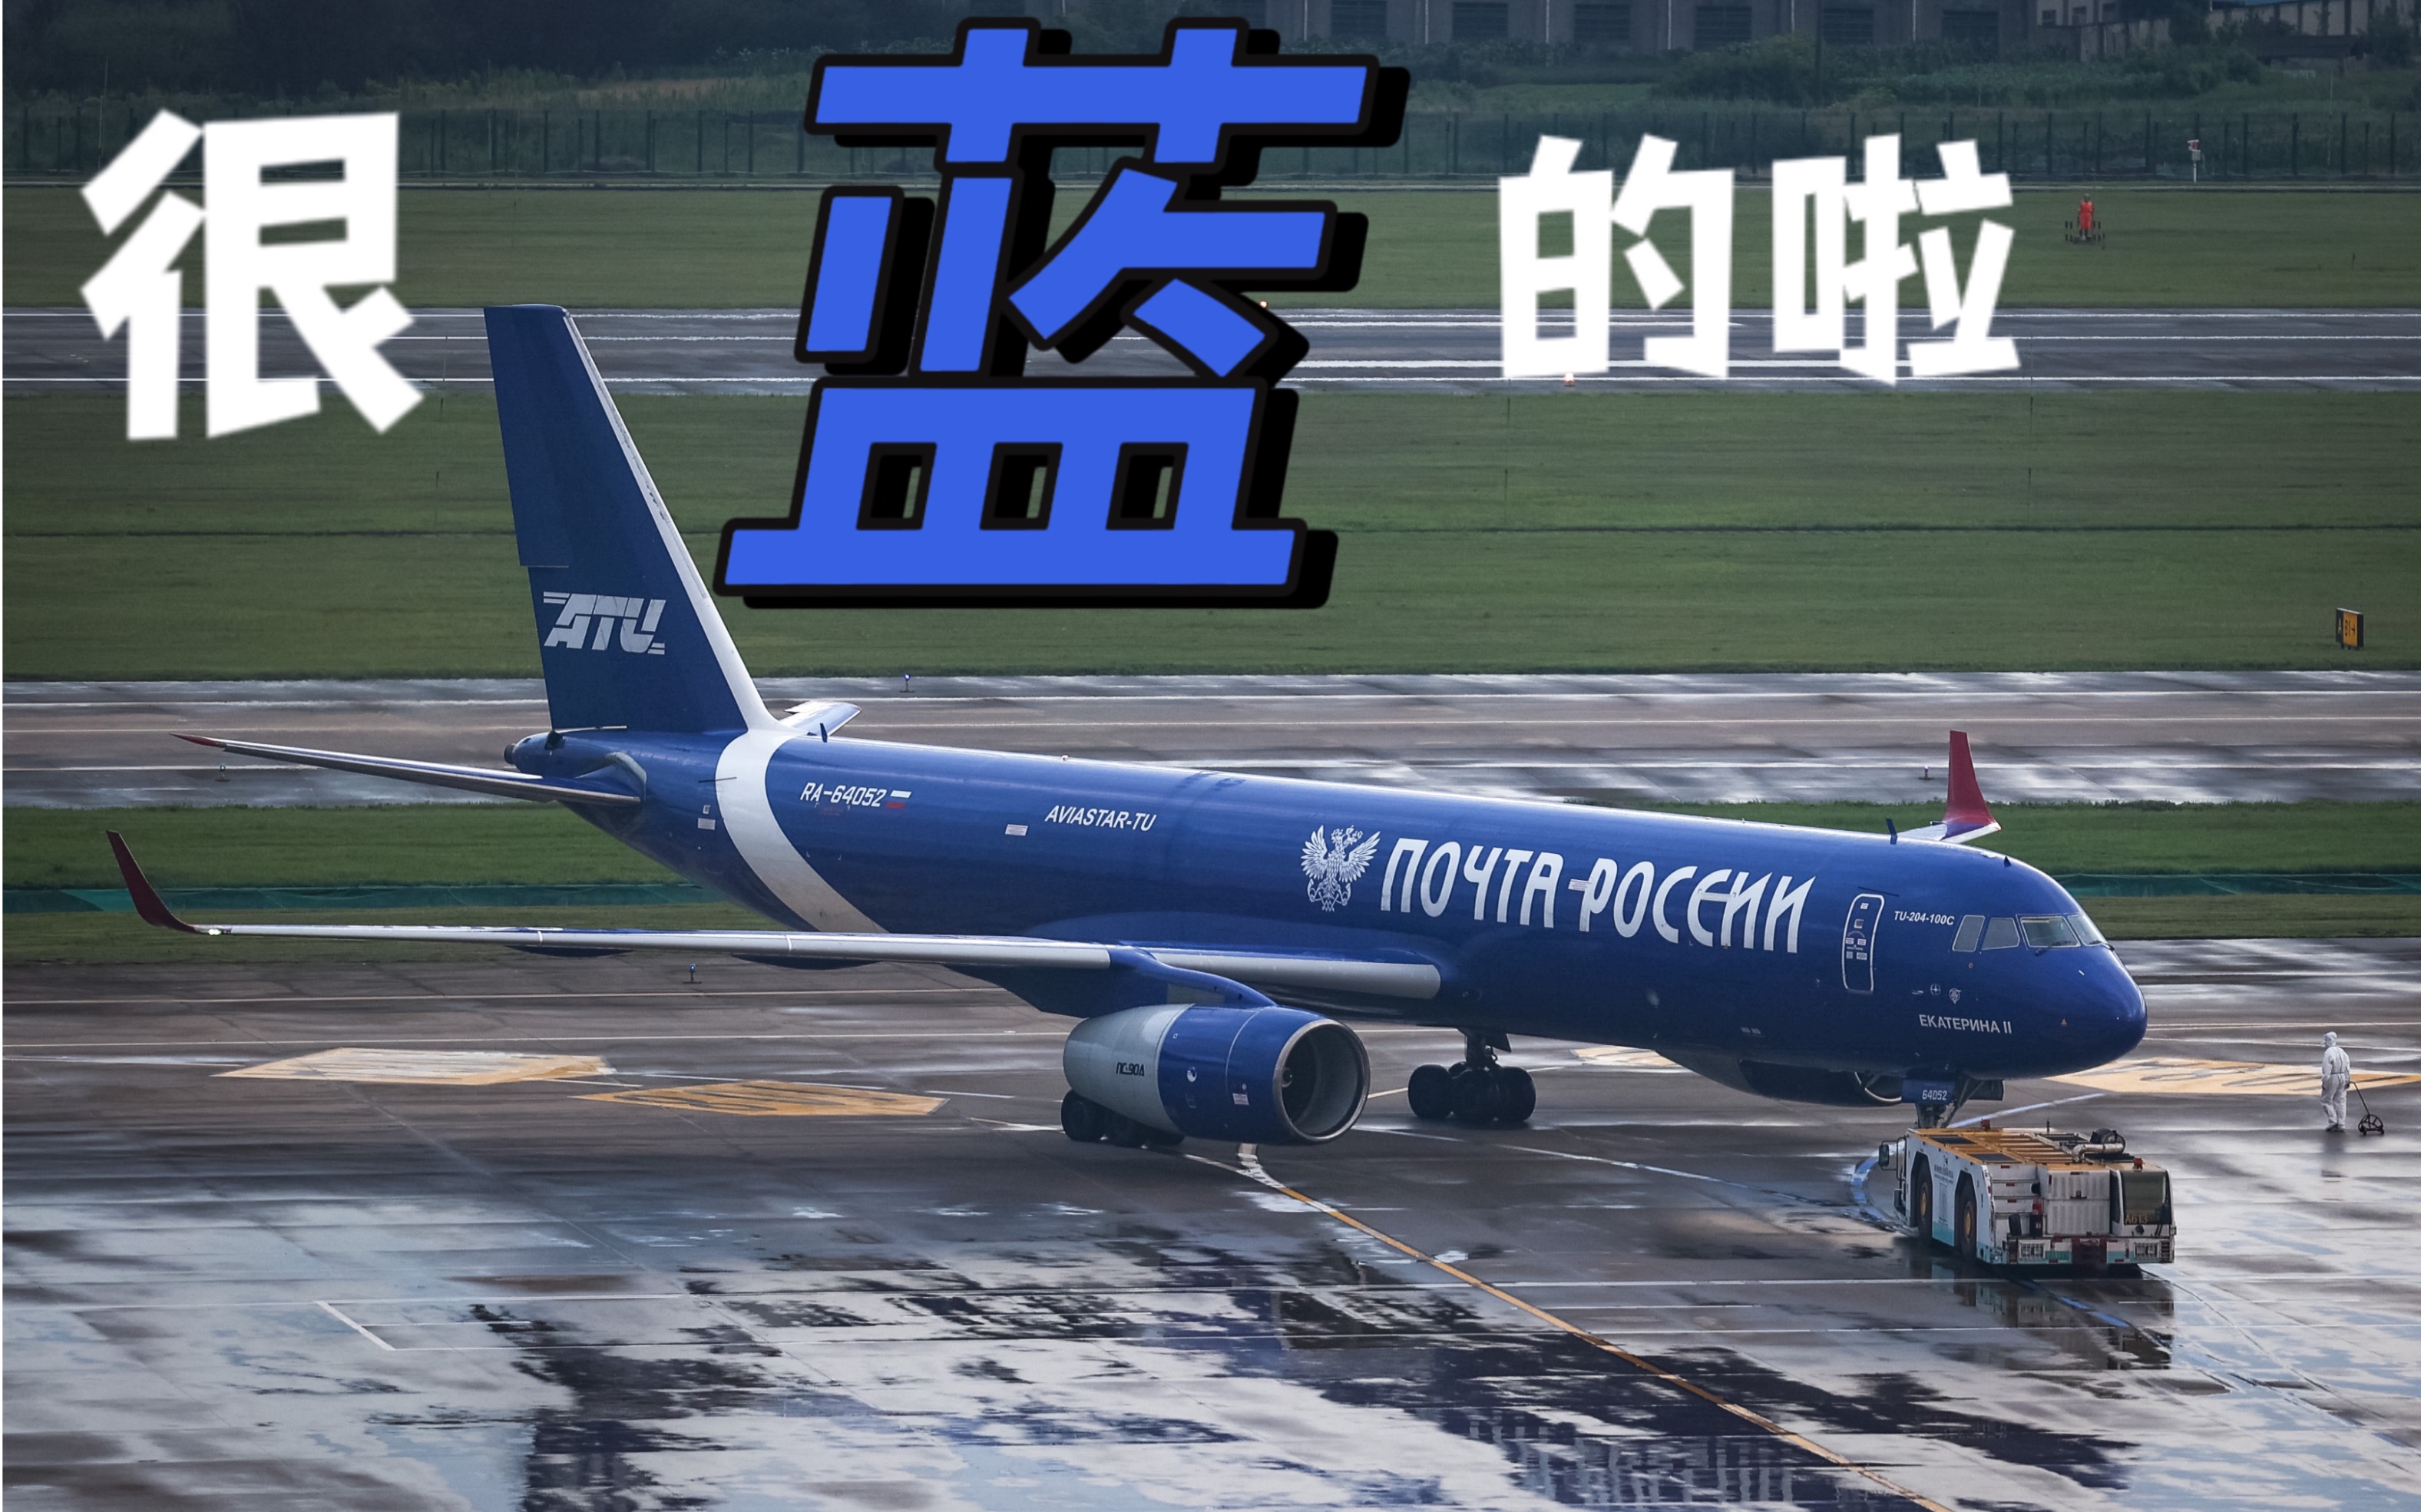 俄罗斯atu航空图204俄罗斯邮政涂装杭州起飞